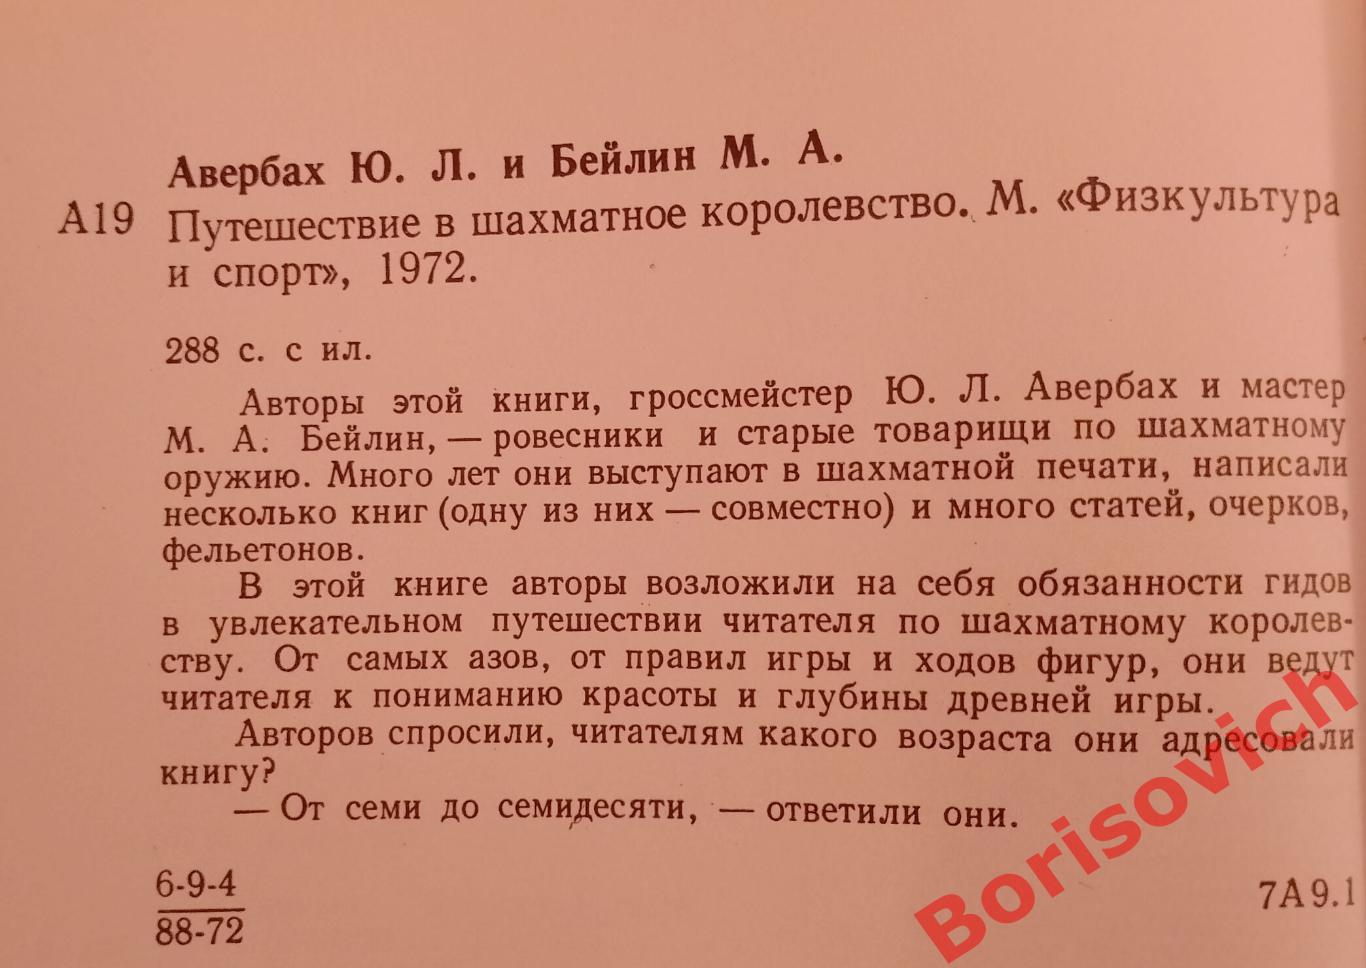 ПУТЕШЕСТВИЕ В ШАХМАТНОЕ КОРОЛЕВСТВО ФиС 1972 г 288 страниц с иллюстрациями 1